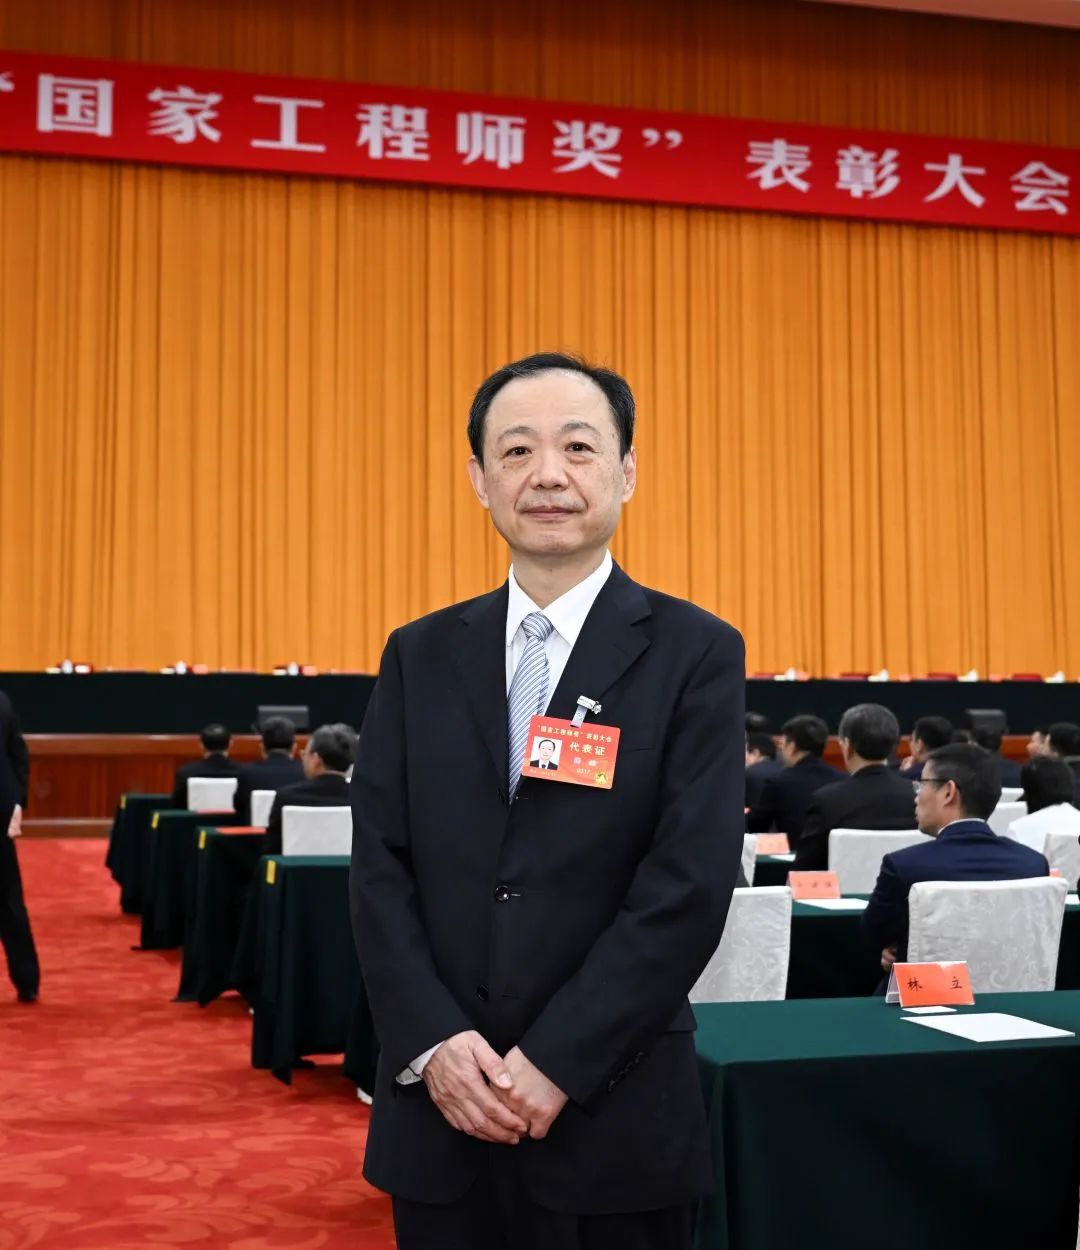 祝贺！北京建筑大学校友薛峰荣获首届“国家卓越工程师”称号！